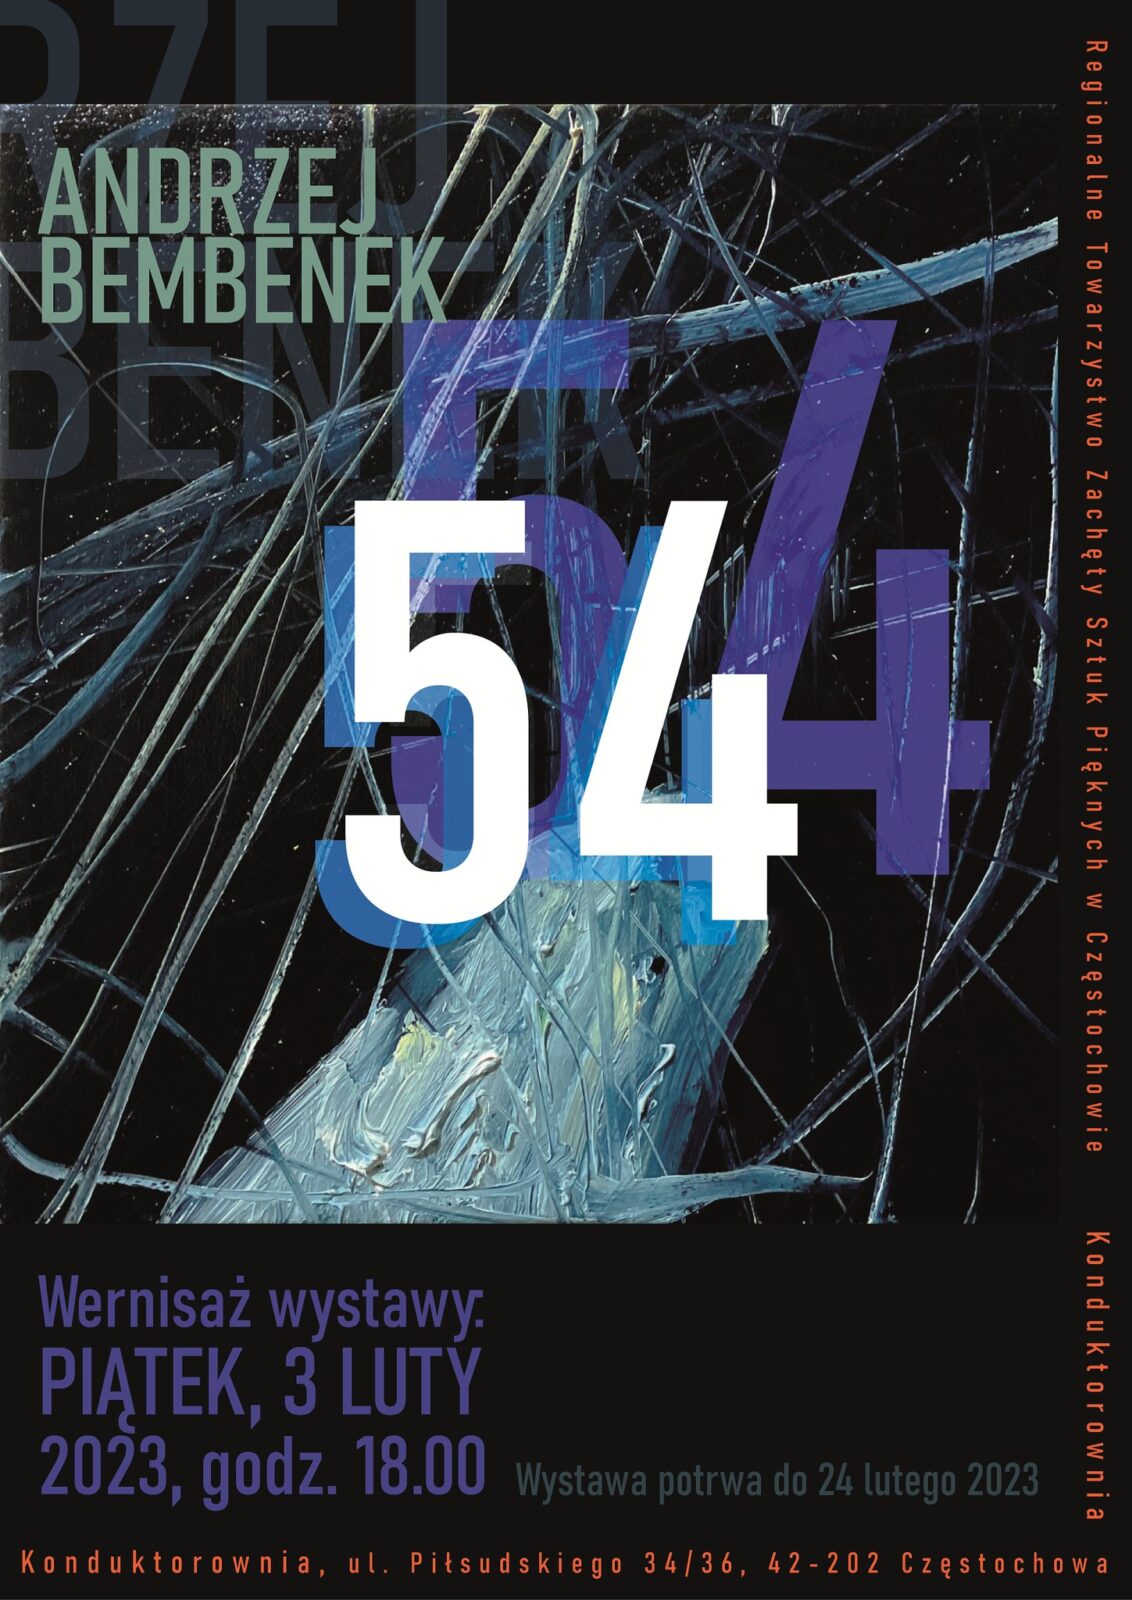 Nowa wystawa w częstochowskiej Konduktorowni. To "54" Andrzeja Bembenka 8